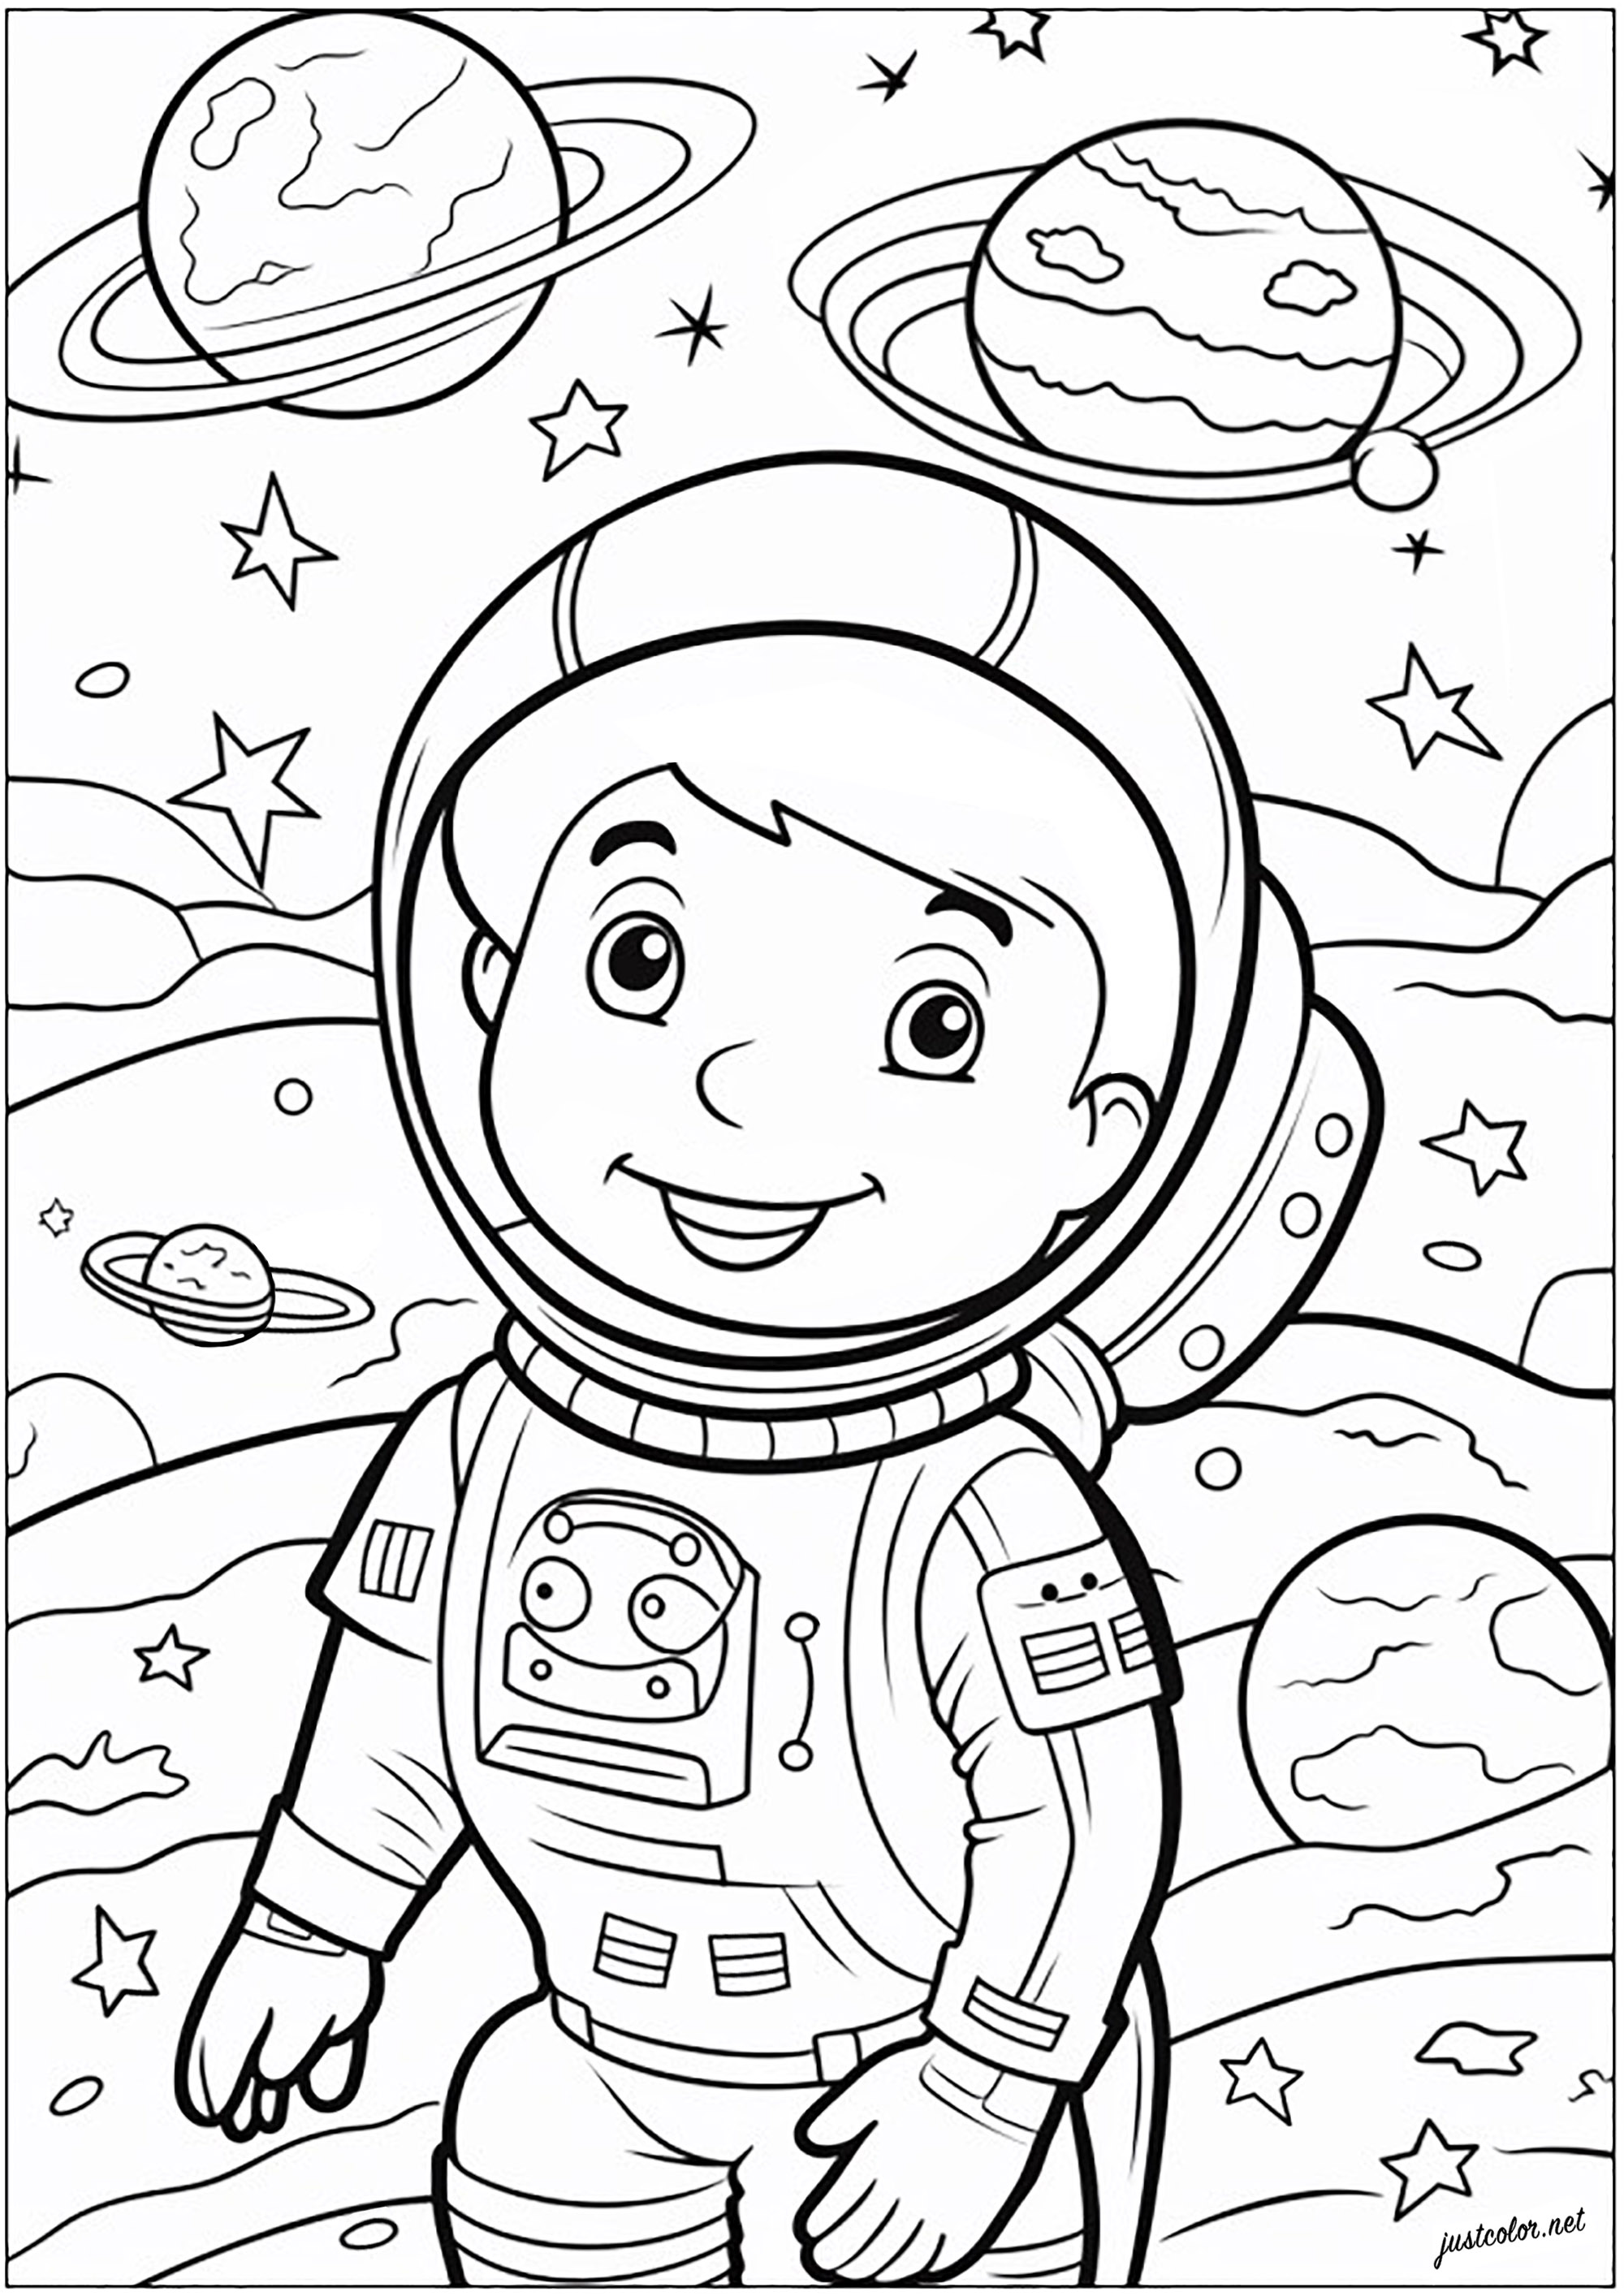 Página para colorear de un pequeño astronauta. Joven astronauta en el espacio, flotando entre estrellas y planetas